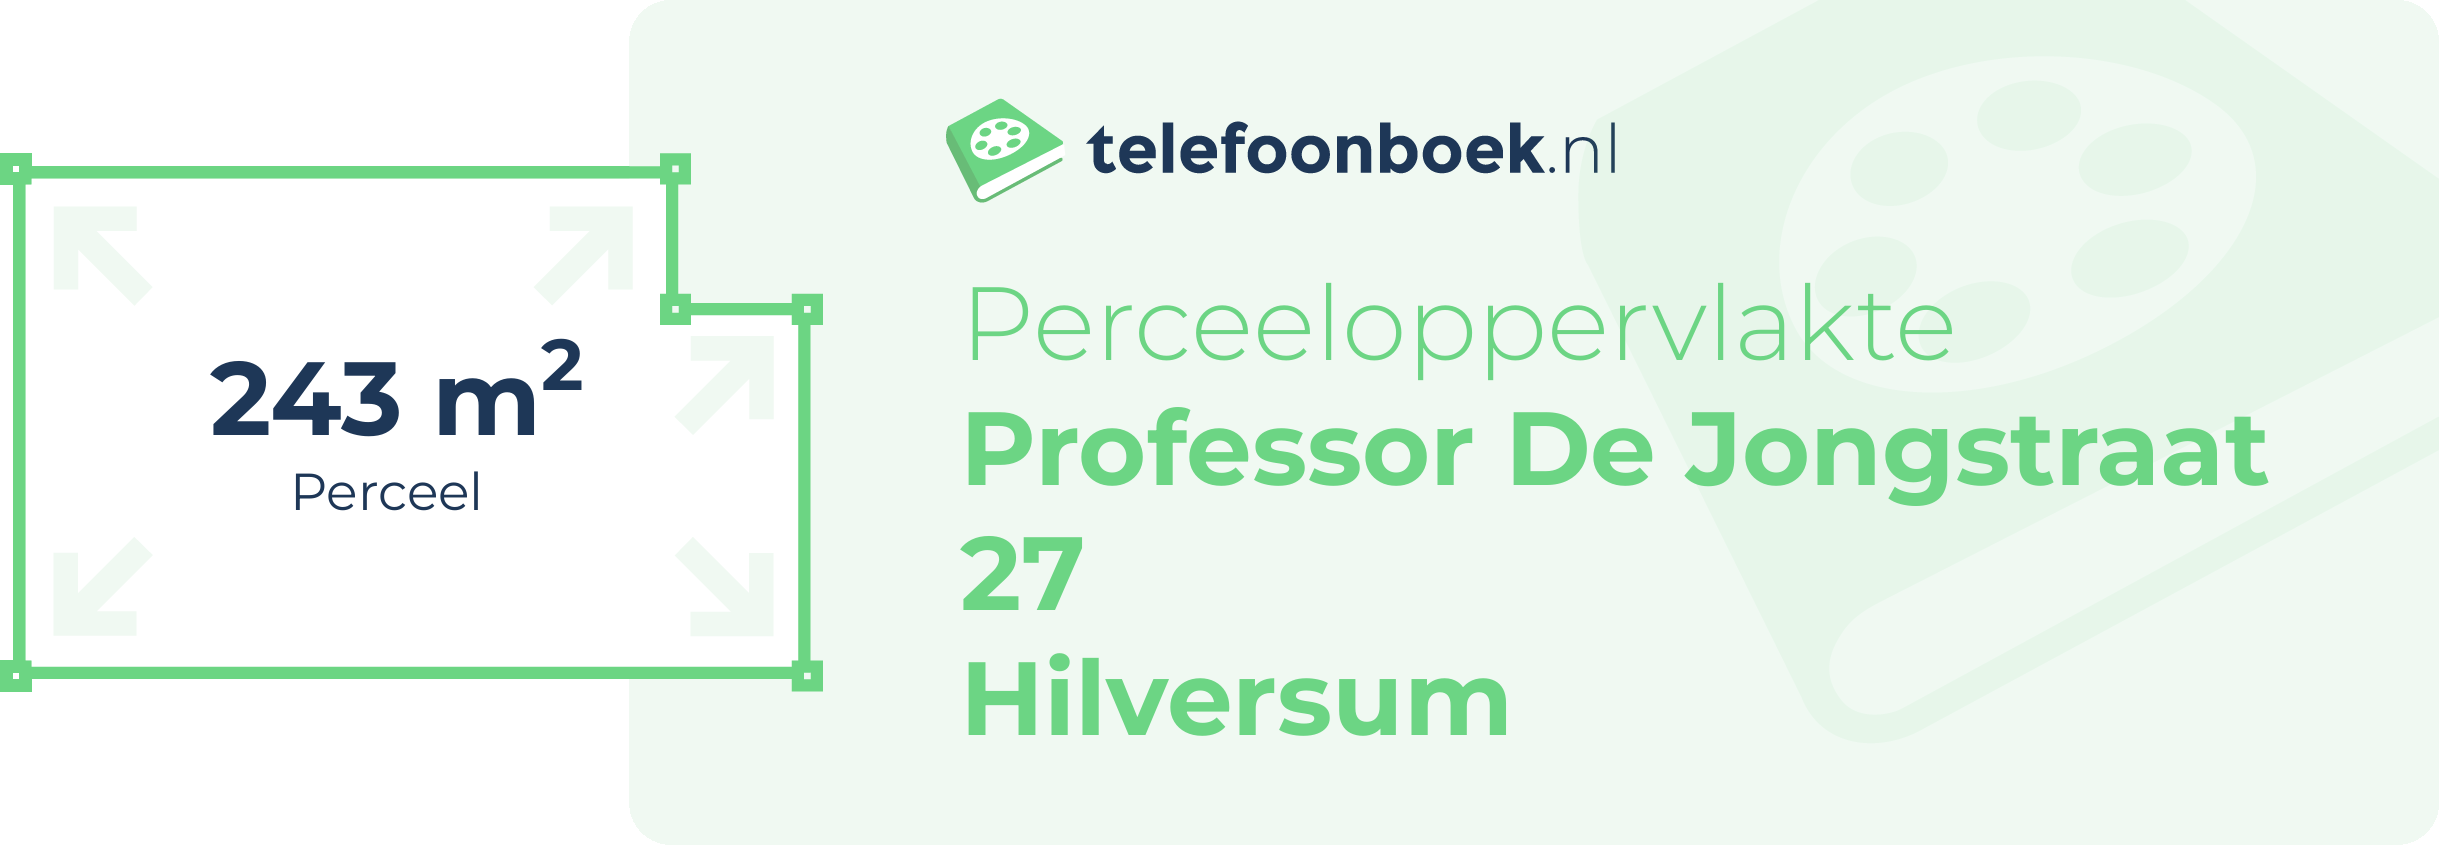 Perceeloppervlakte Professor De Jongstraat 27 Hilversum